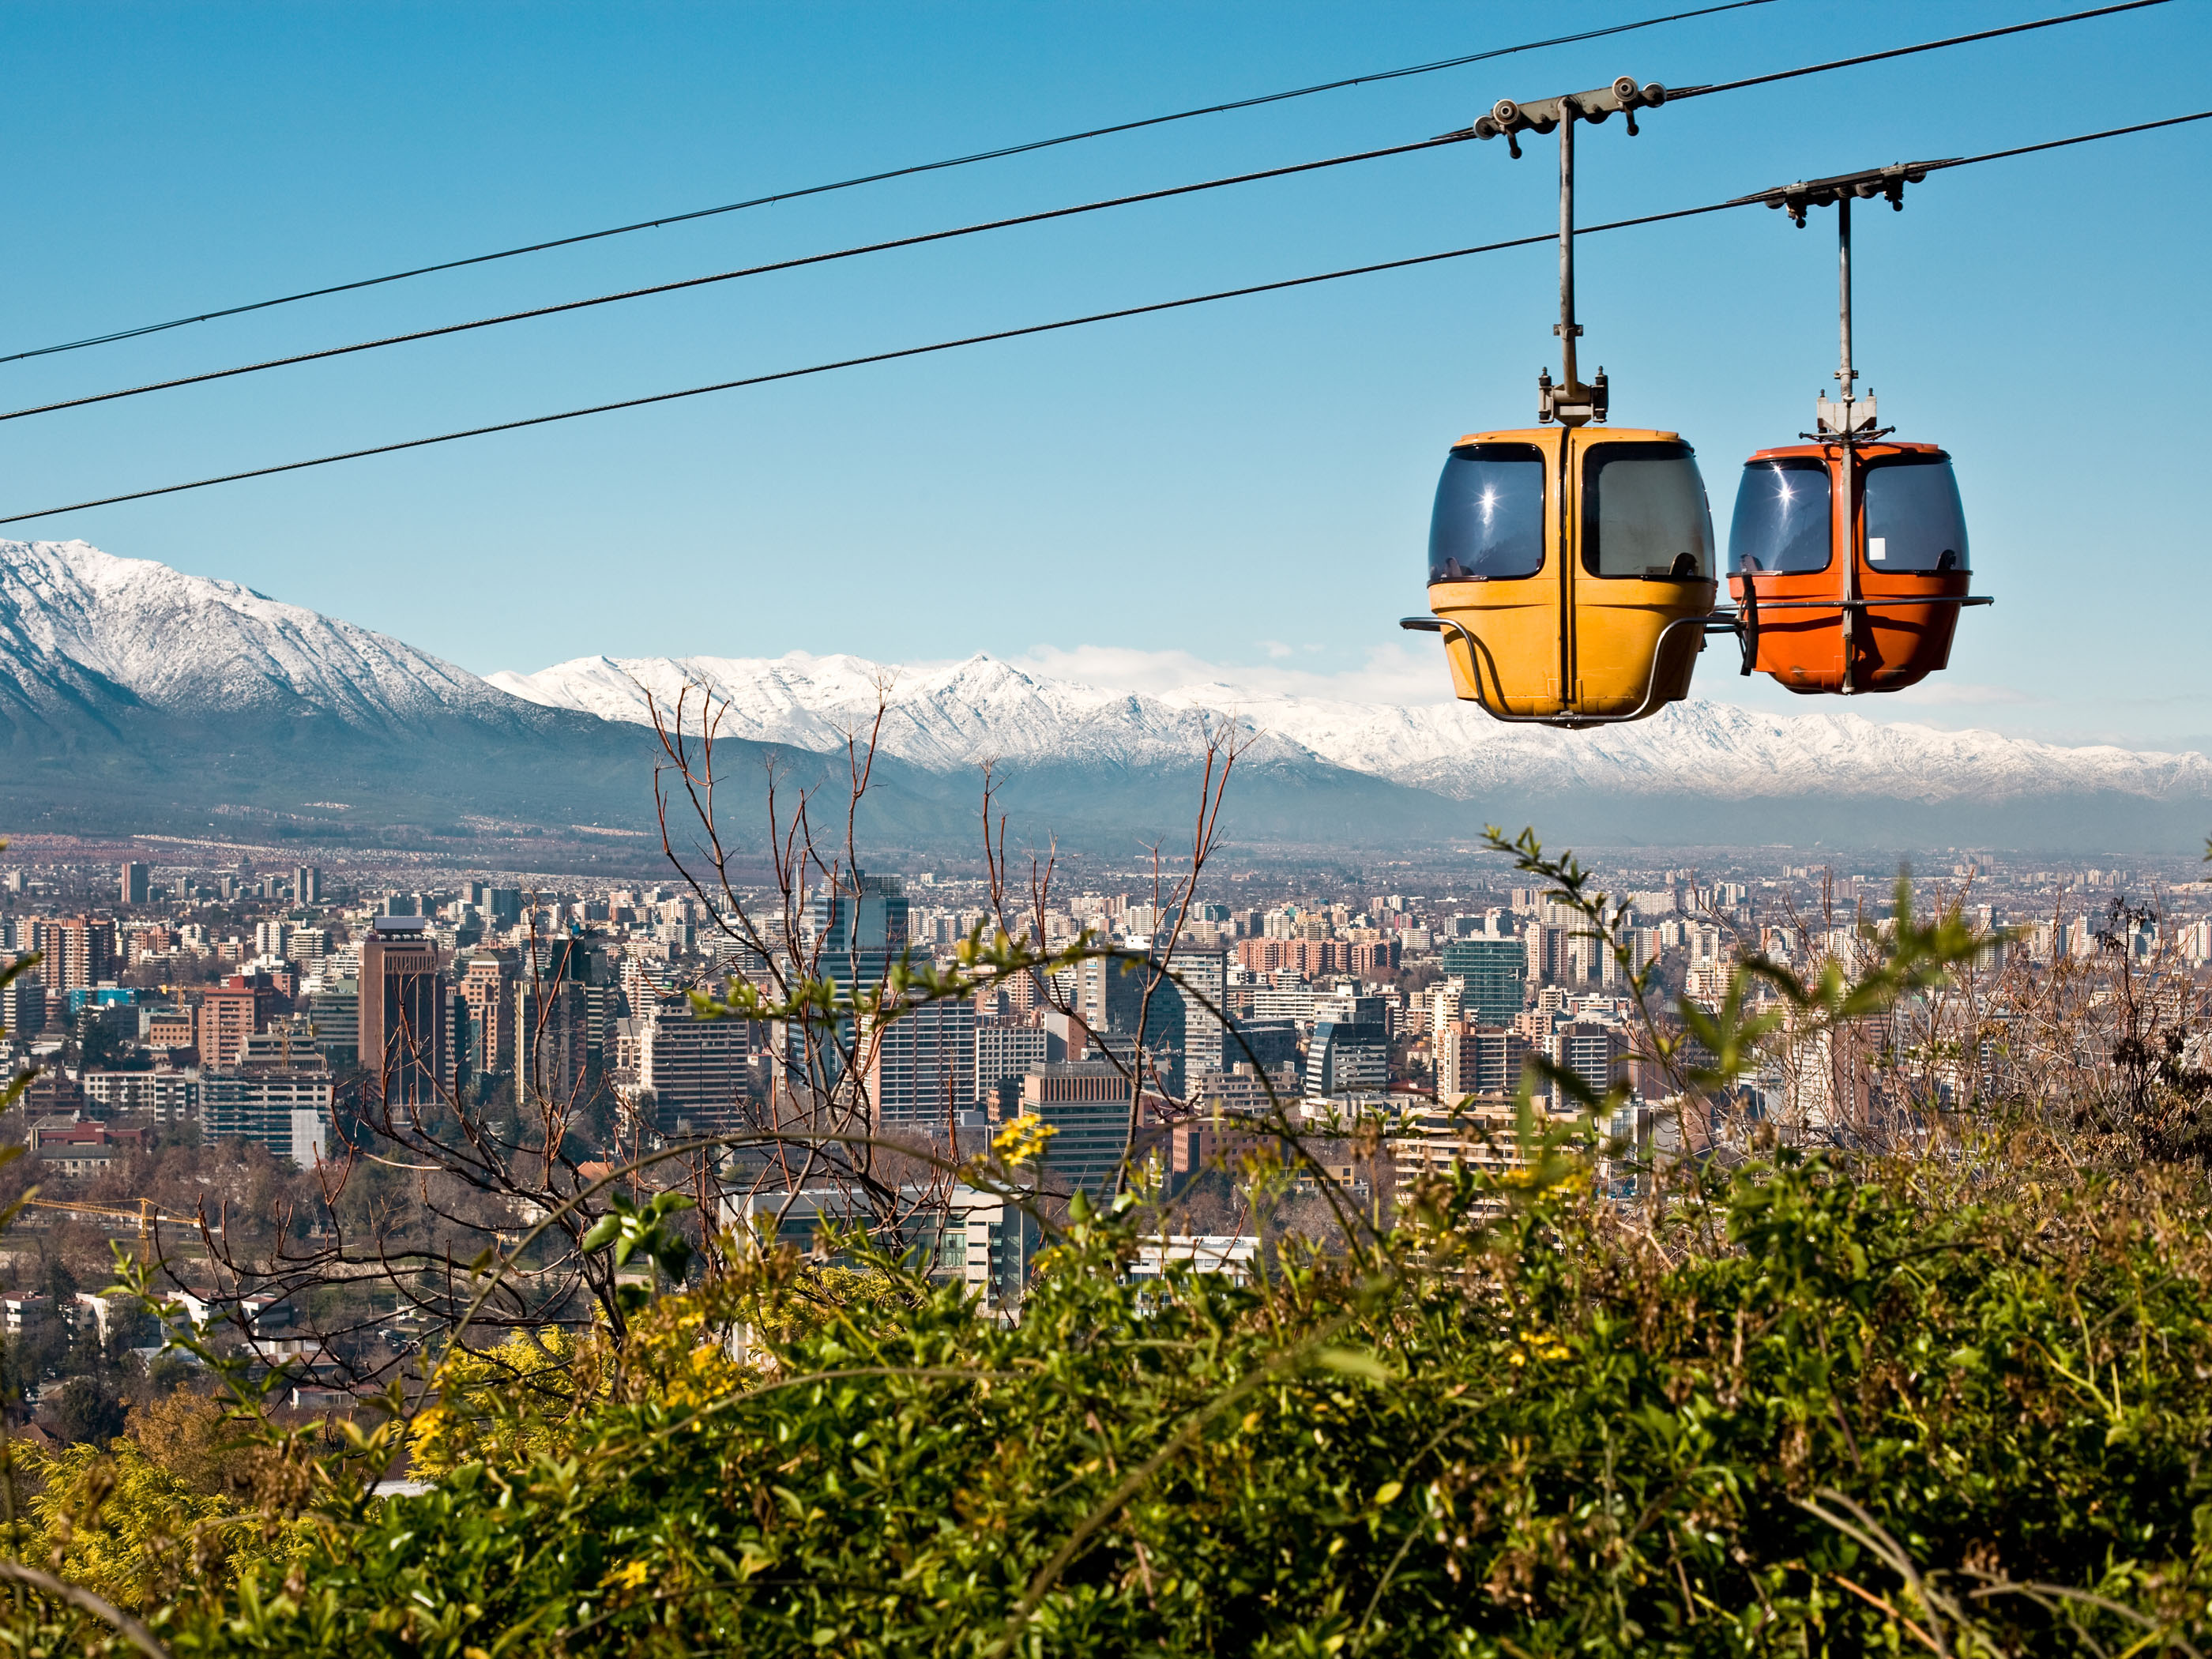 Gandola and mountains in Santiago